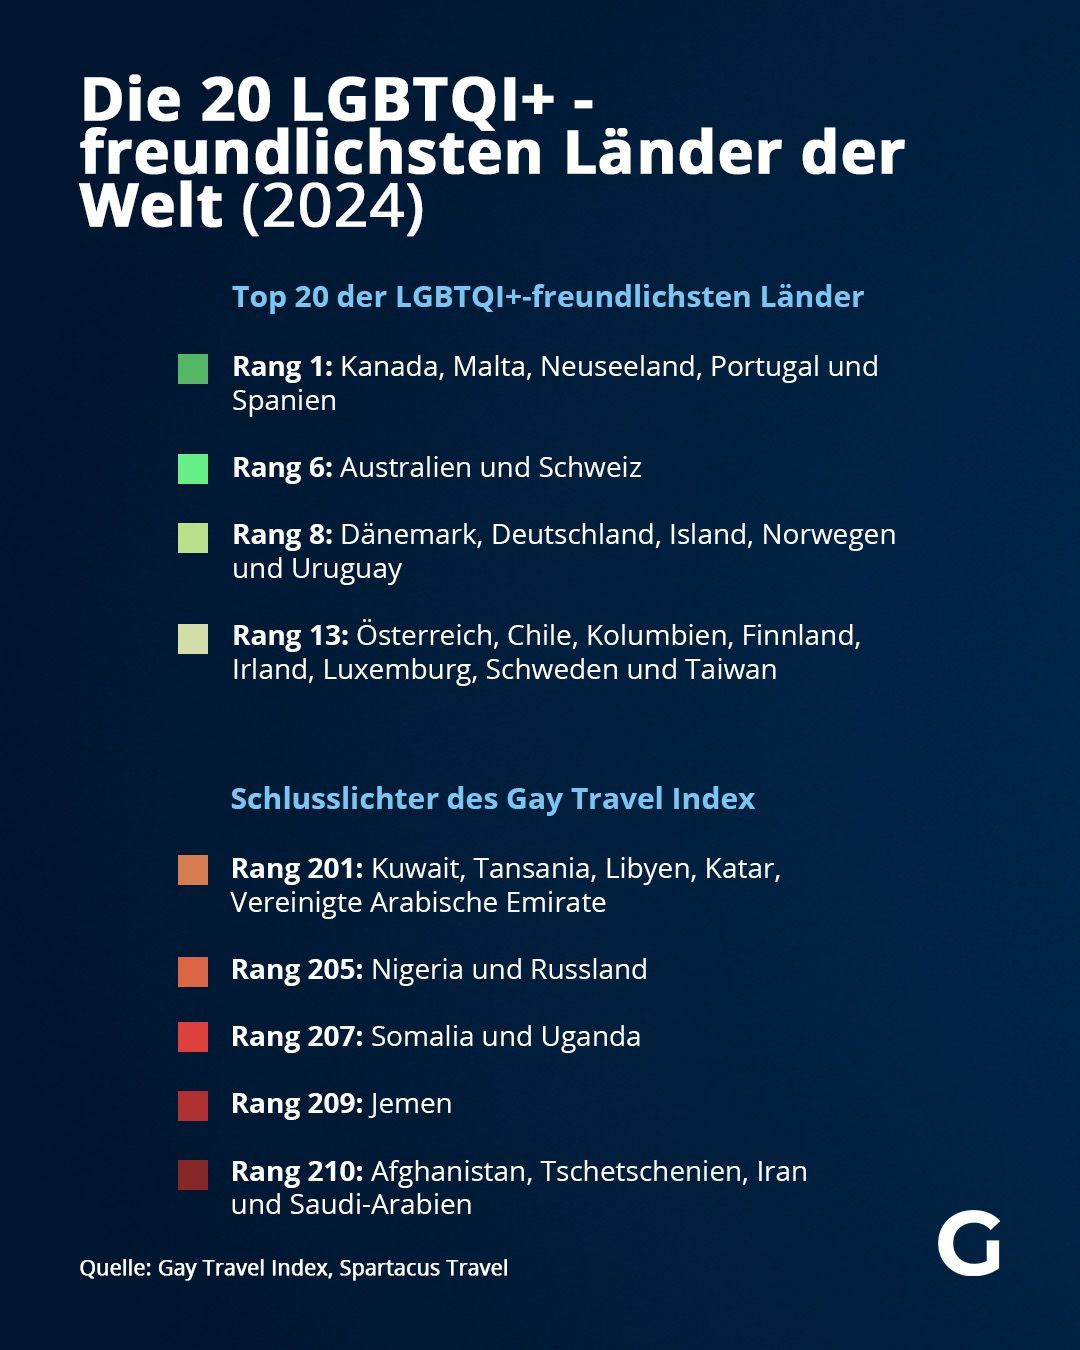 Die 20 LGBTQI+-freundlichsten Länder der Welt (2024)